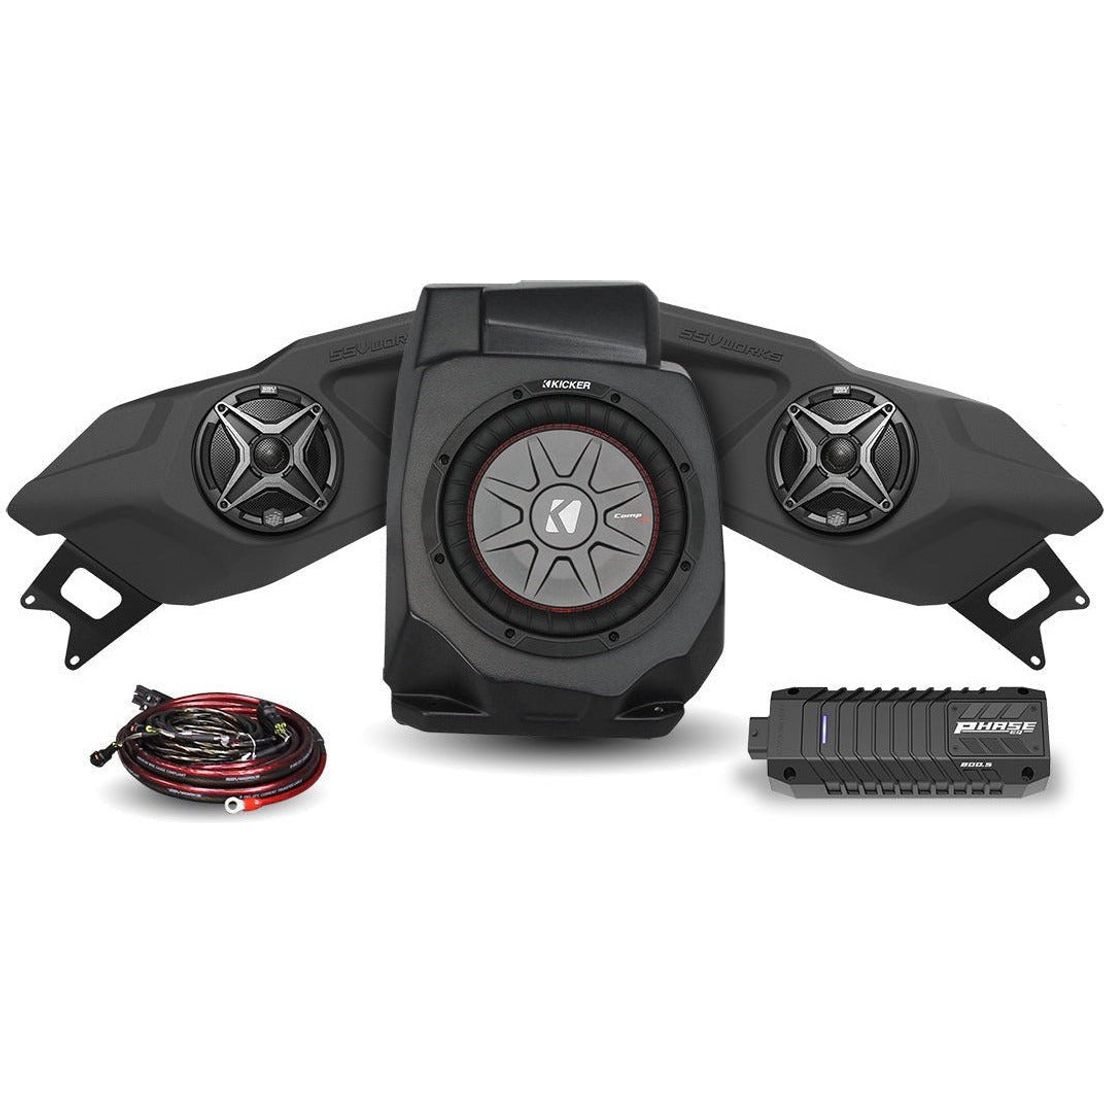 Polaris RZR Pro / Turbo R Ride Command 3-Speaker Audio System